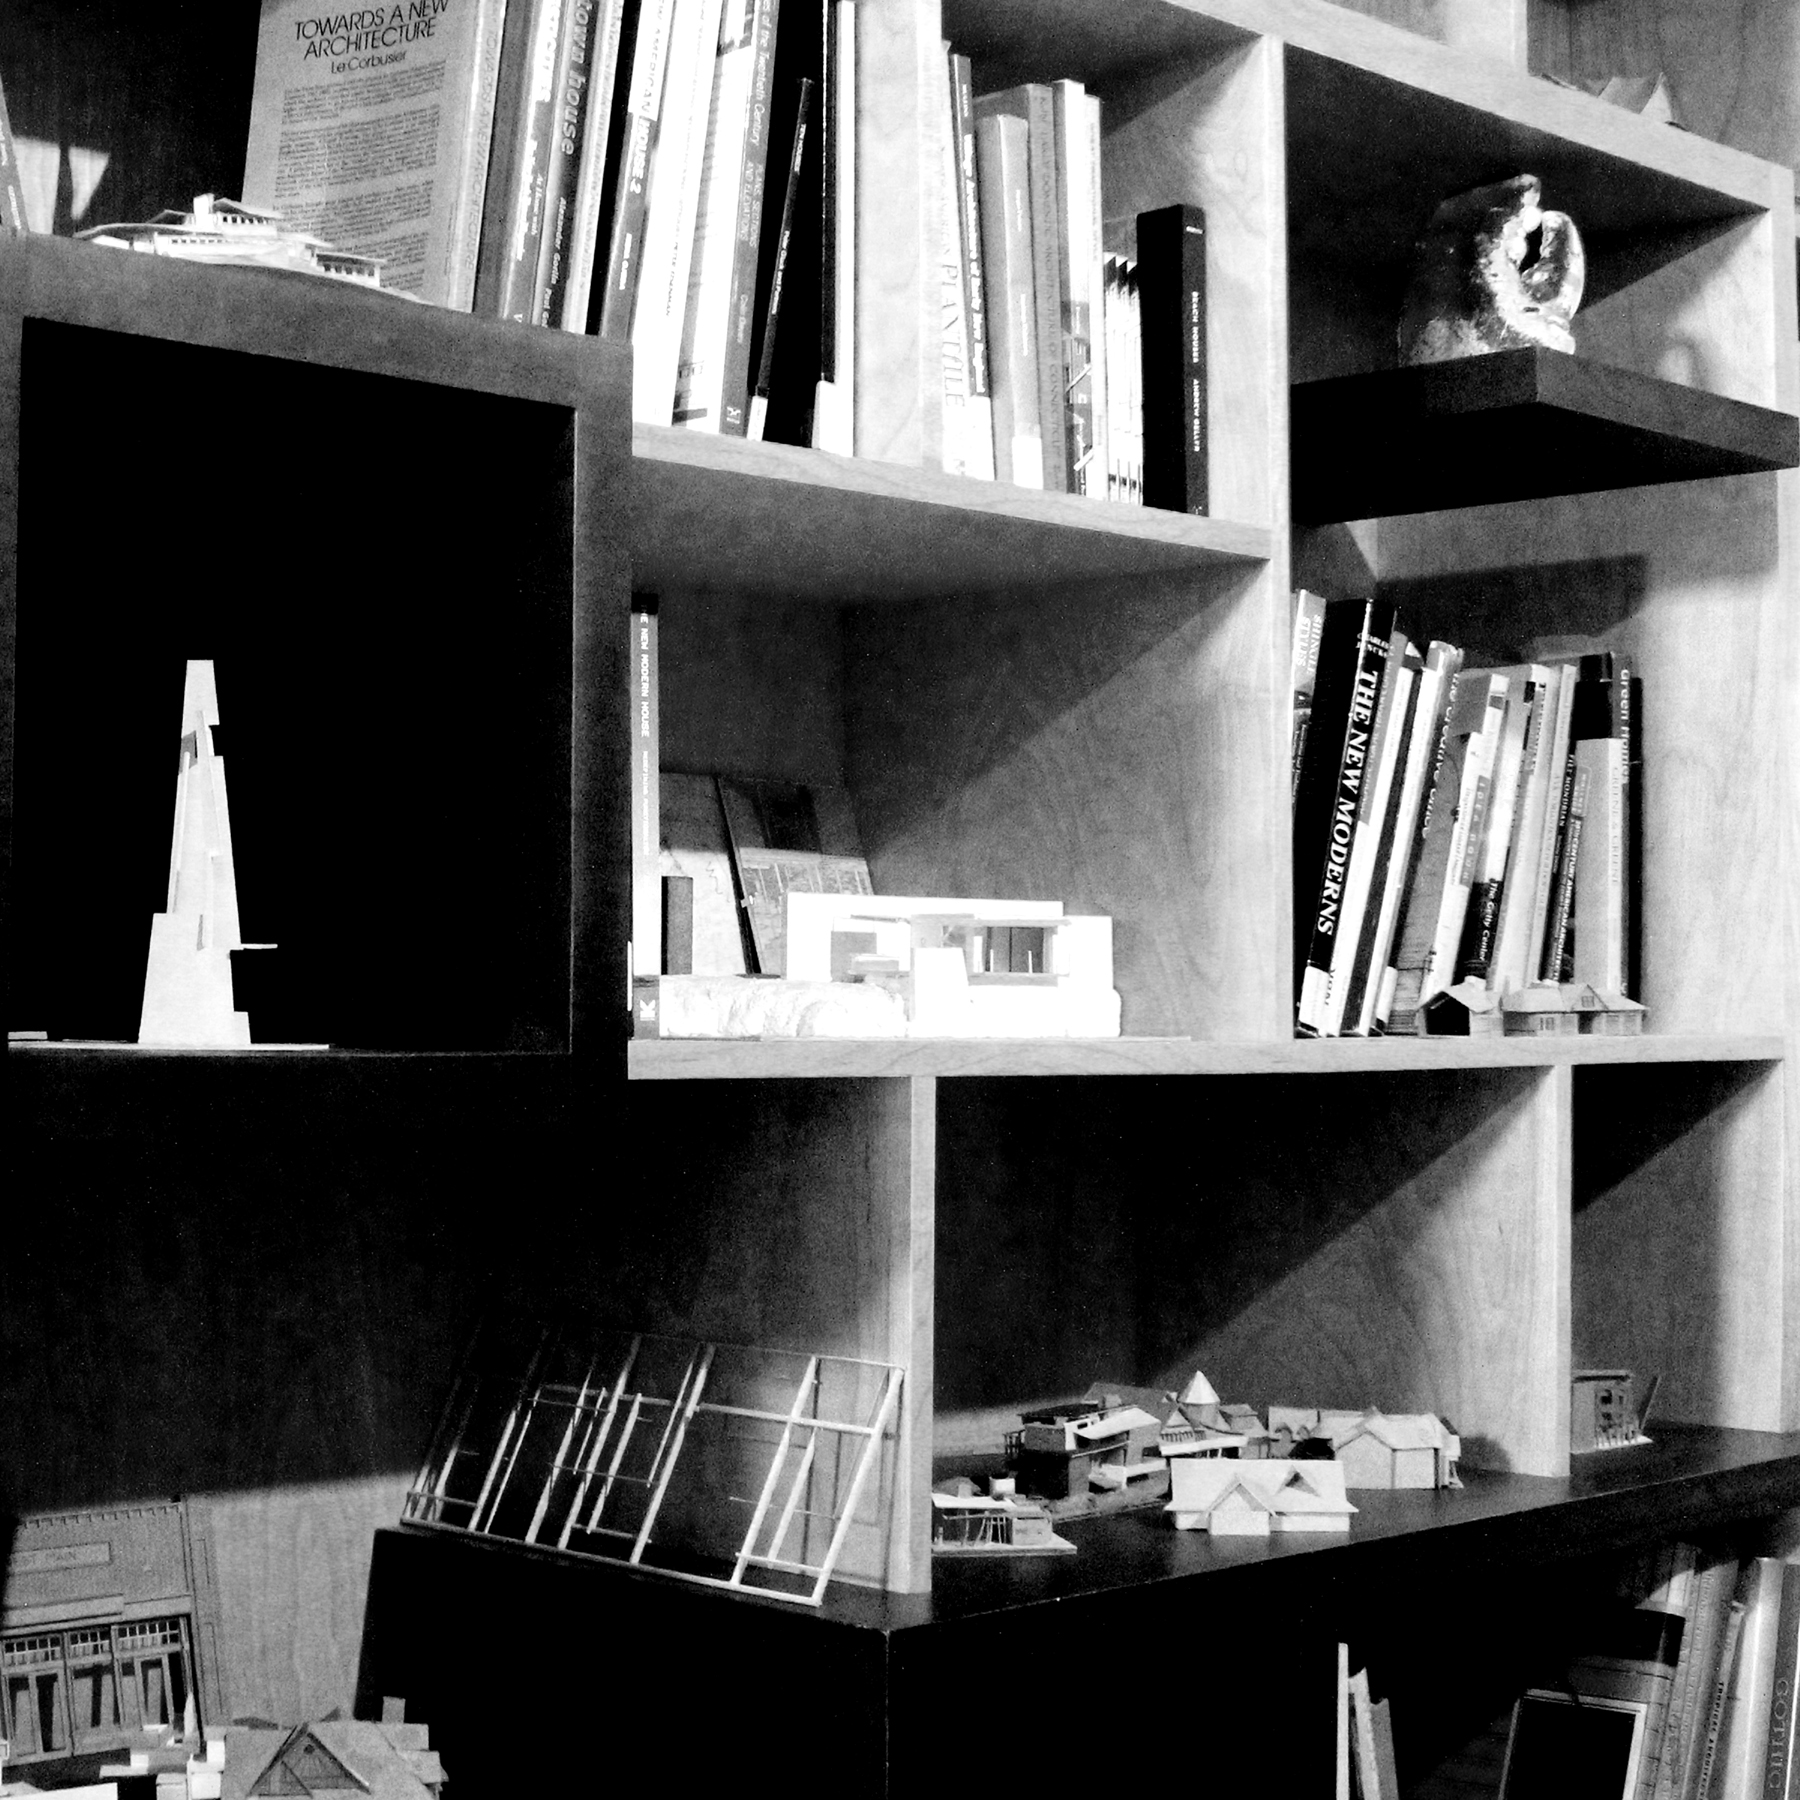 02 - Bookshelf.jpg